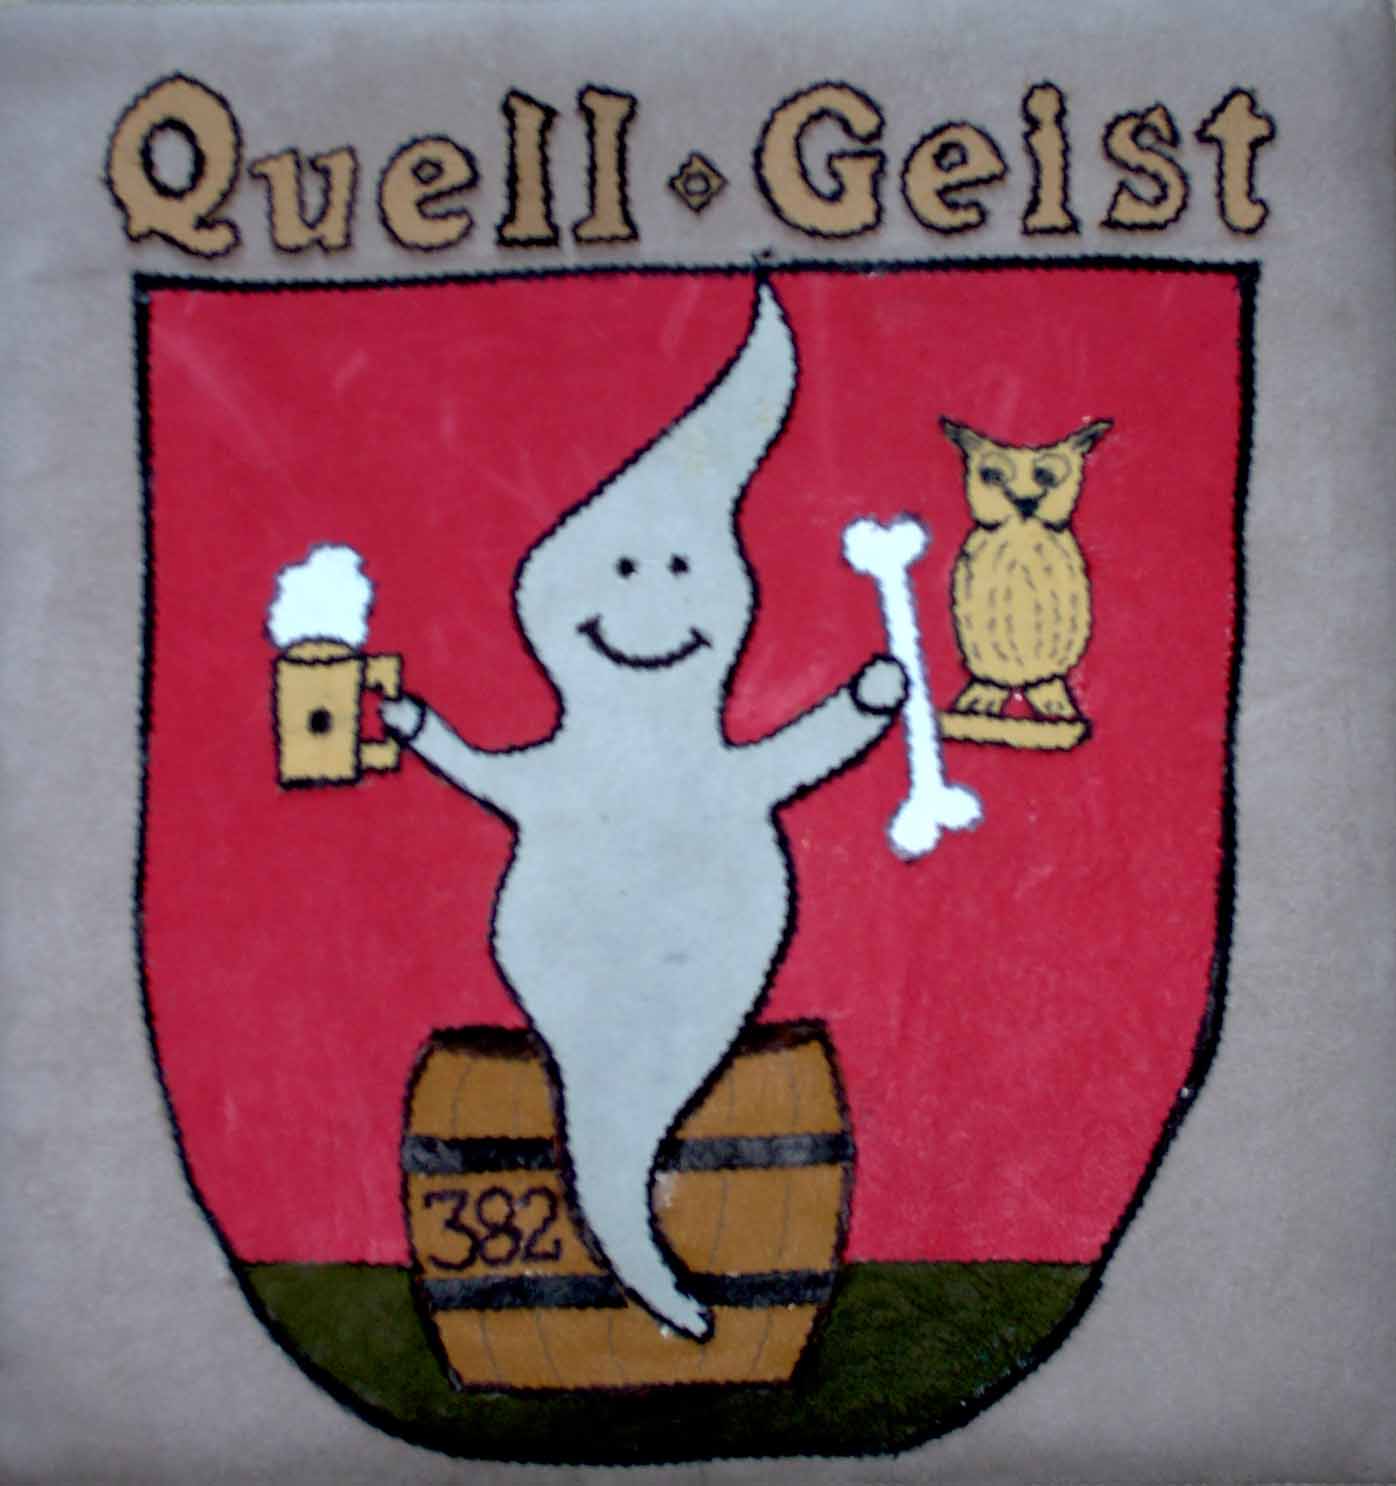 Wappen von Rt. Quell-Geist